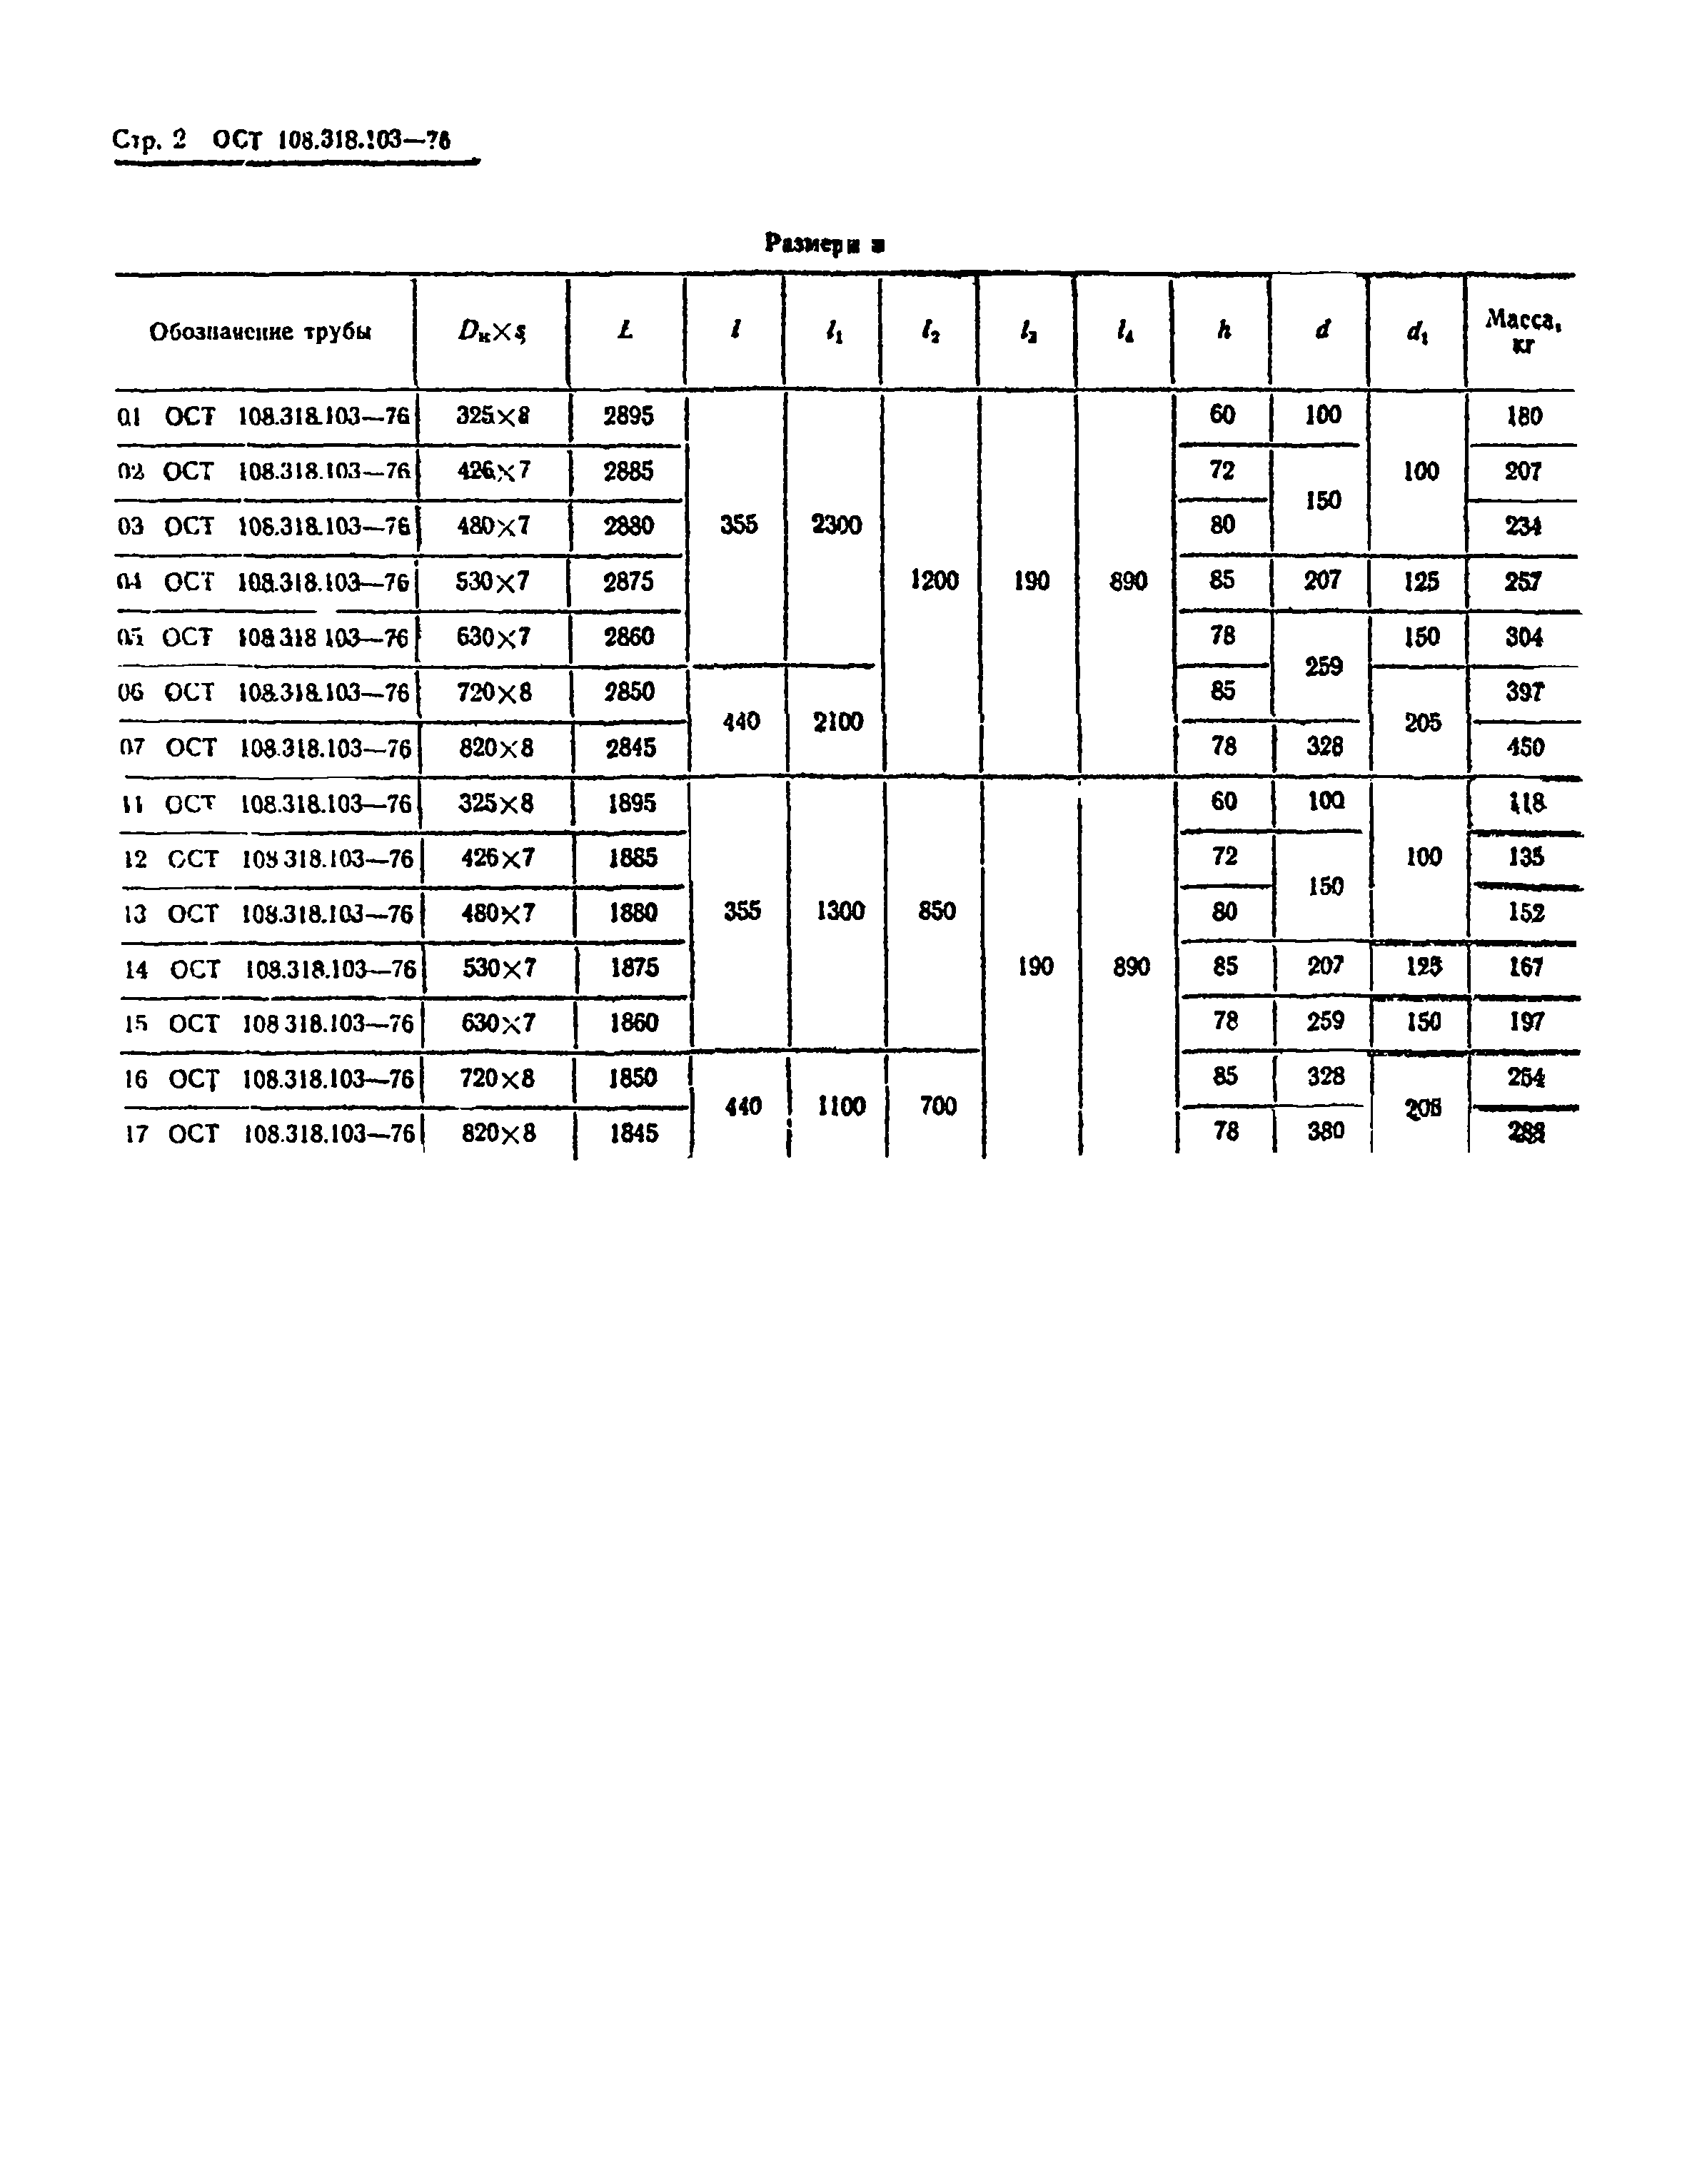 ОСТ 108.318.103-76